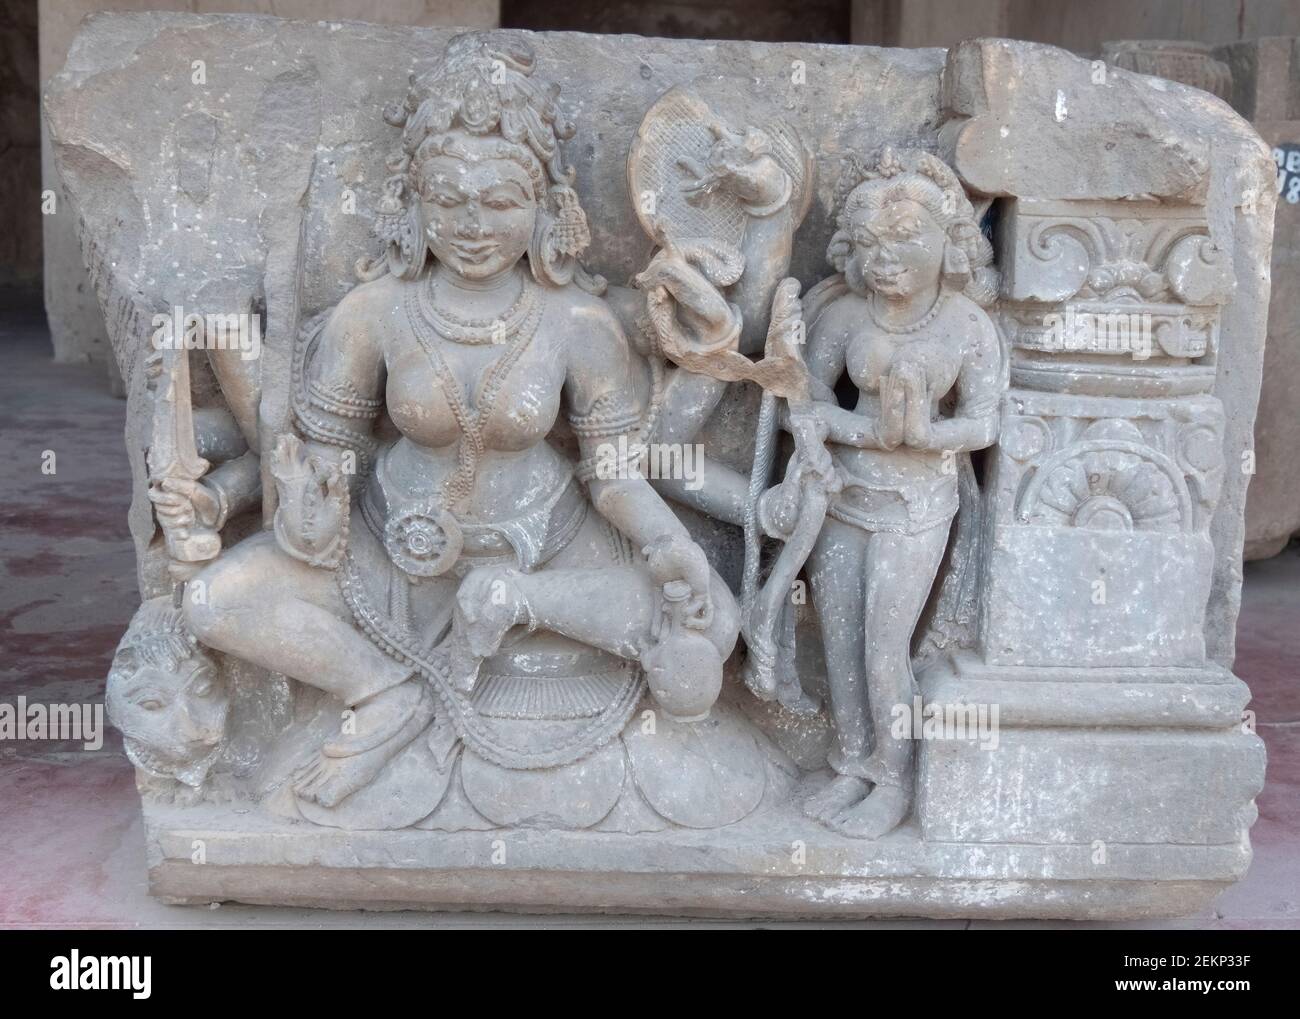 Eine sitzende hinduistische Göttin, die am harschat mata-Tempel graviert Im Dorf abhaneri im indischen Bundesstaat rajasthan Stockfoto